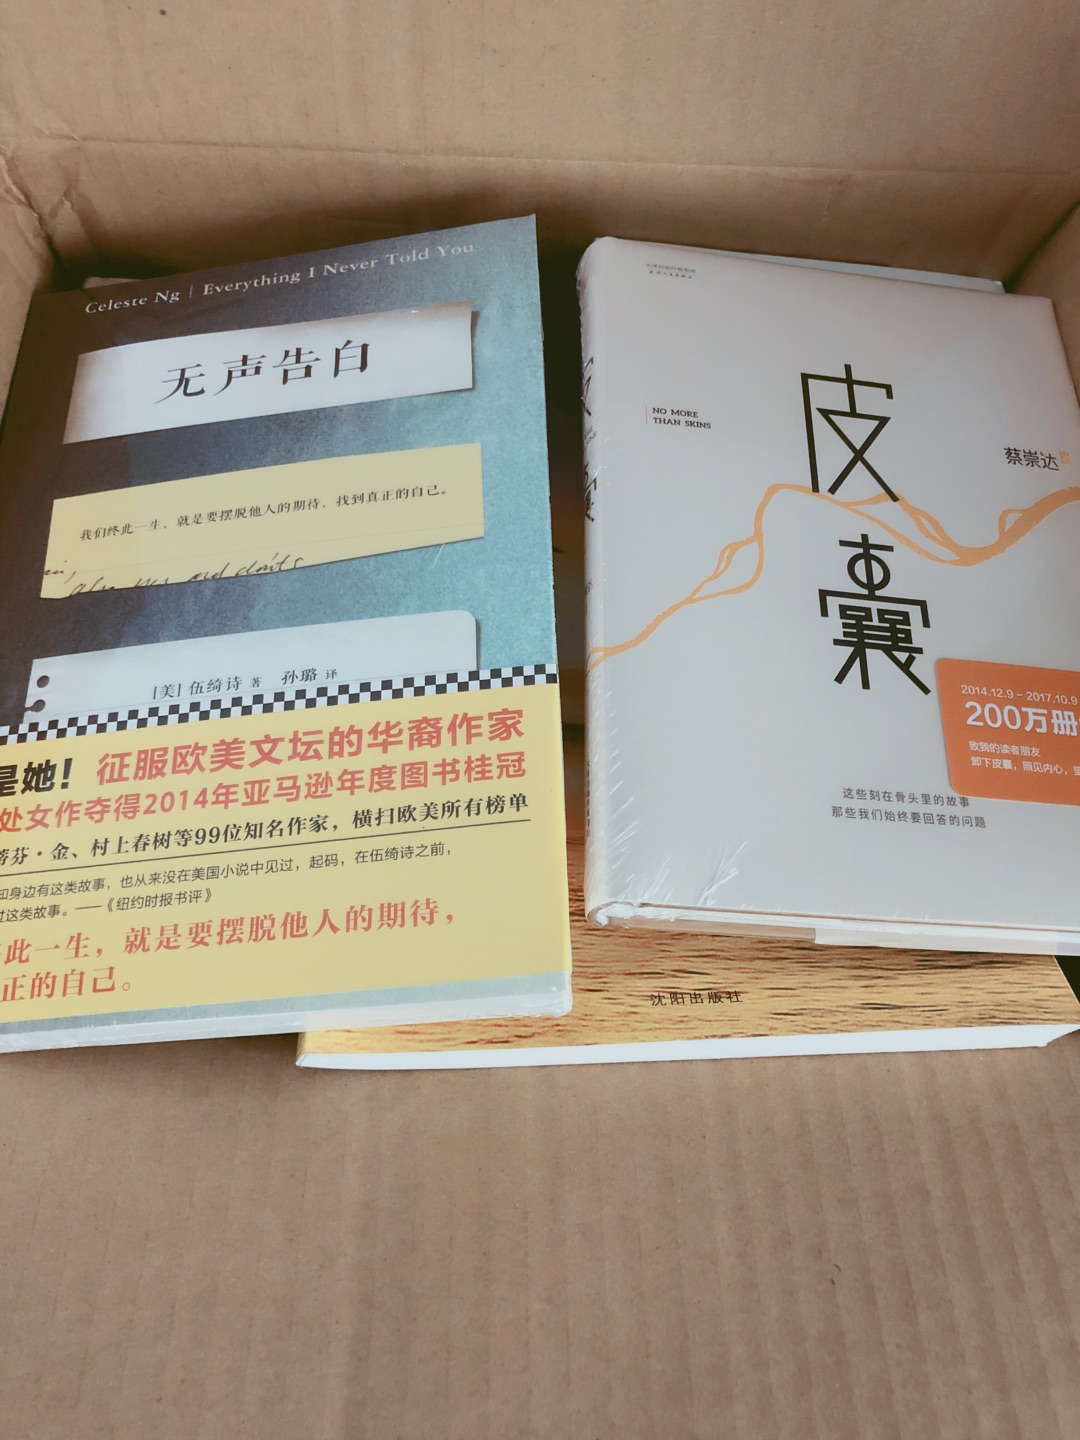 包裝完好，期待已久的書，京東一如既往的信賴。